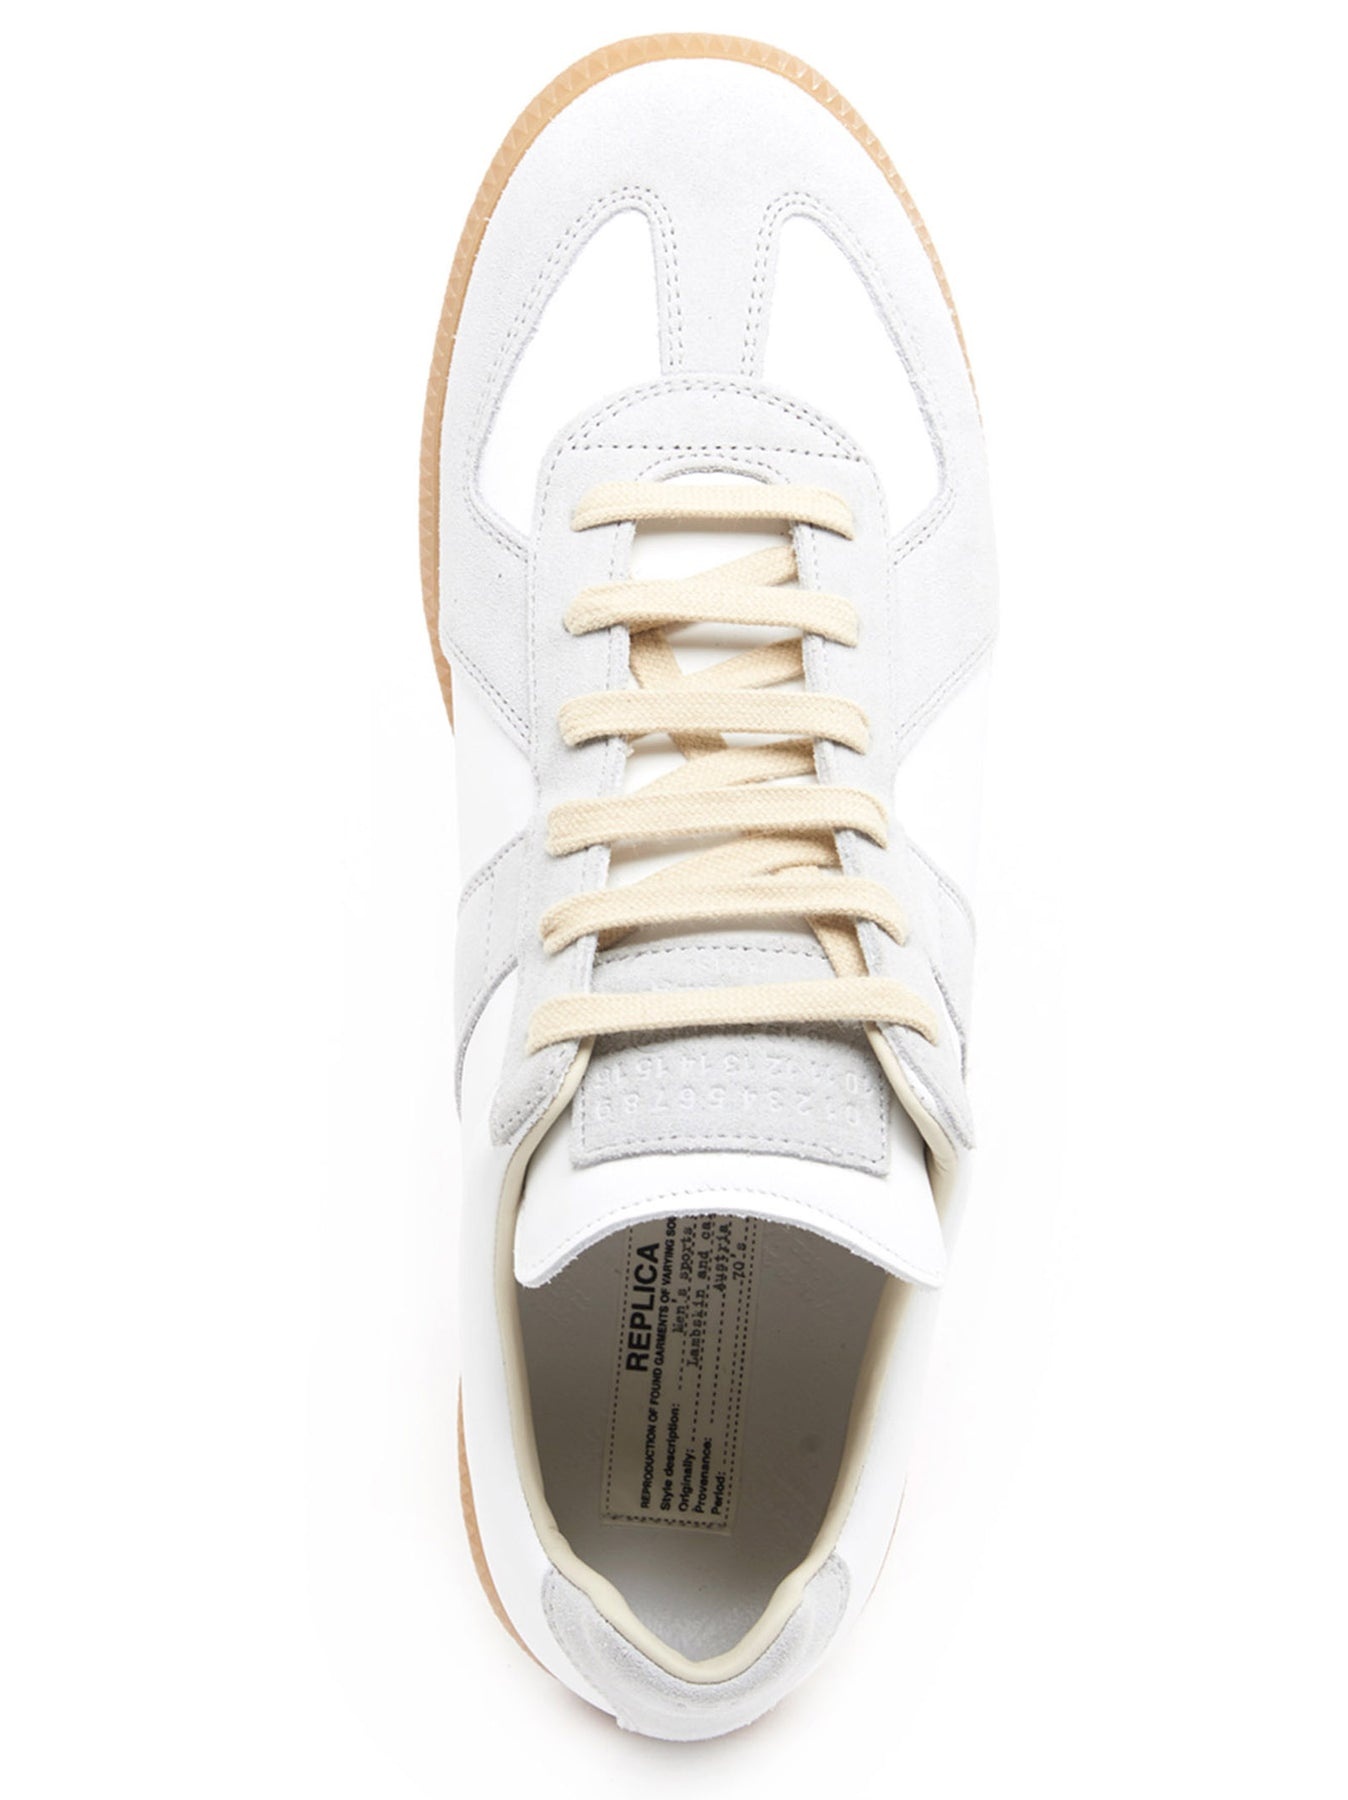 Replica Sneakers White - 3